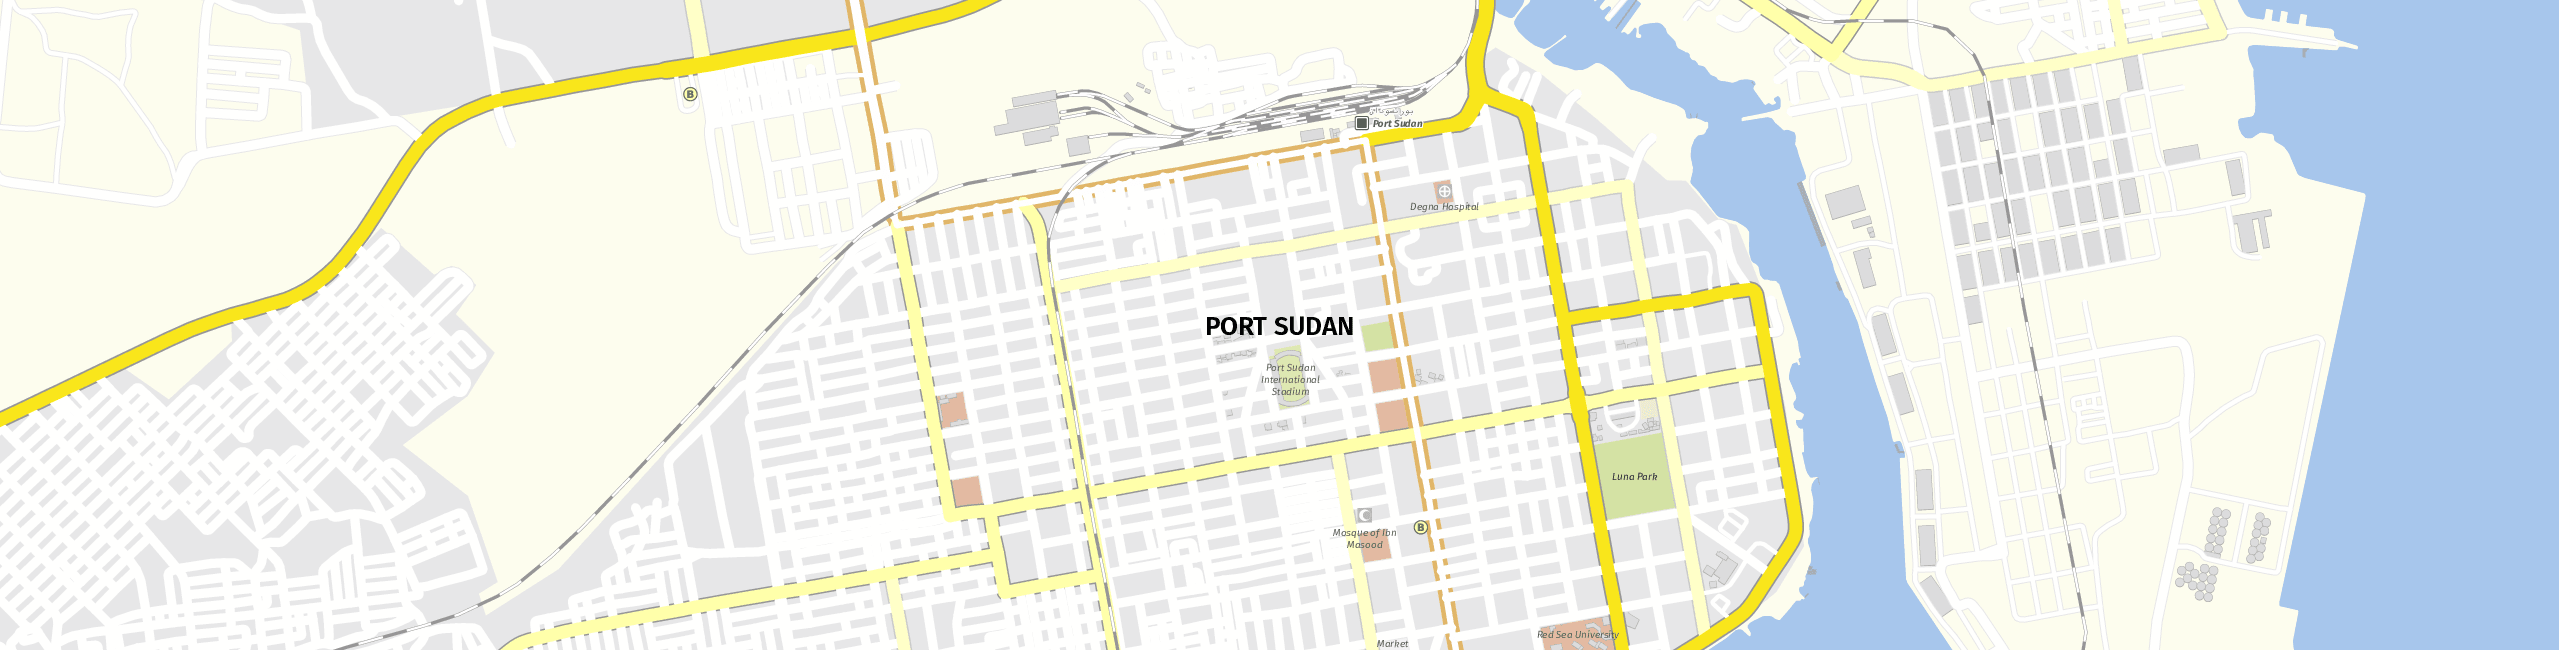 Stadtplan Bur Sudan zum Downloaden.